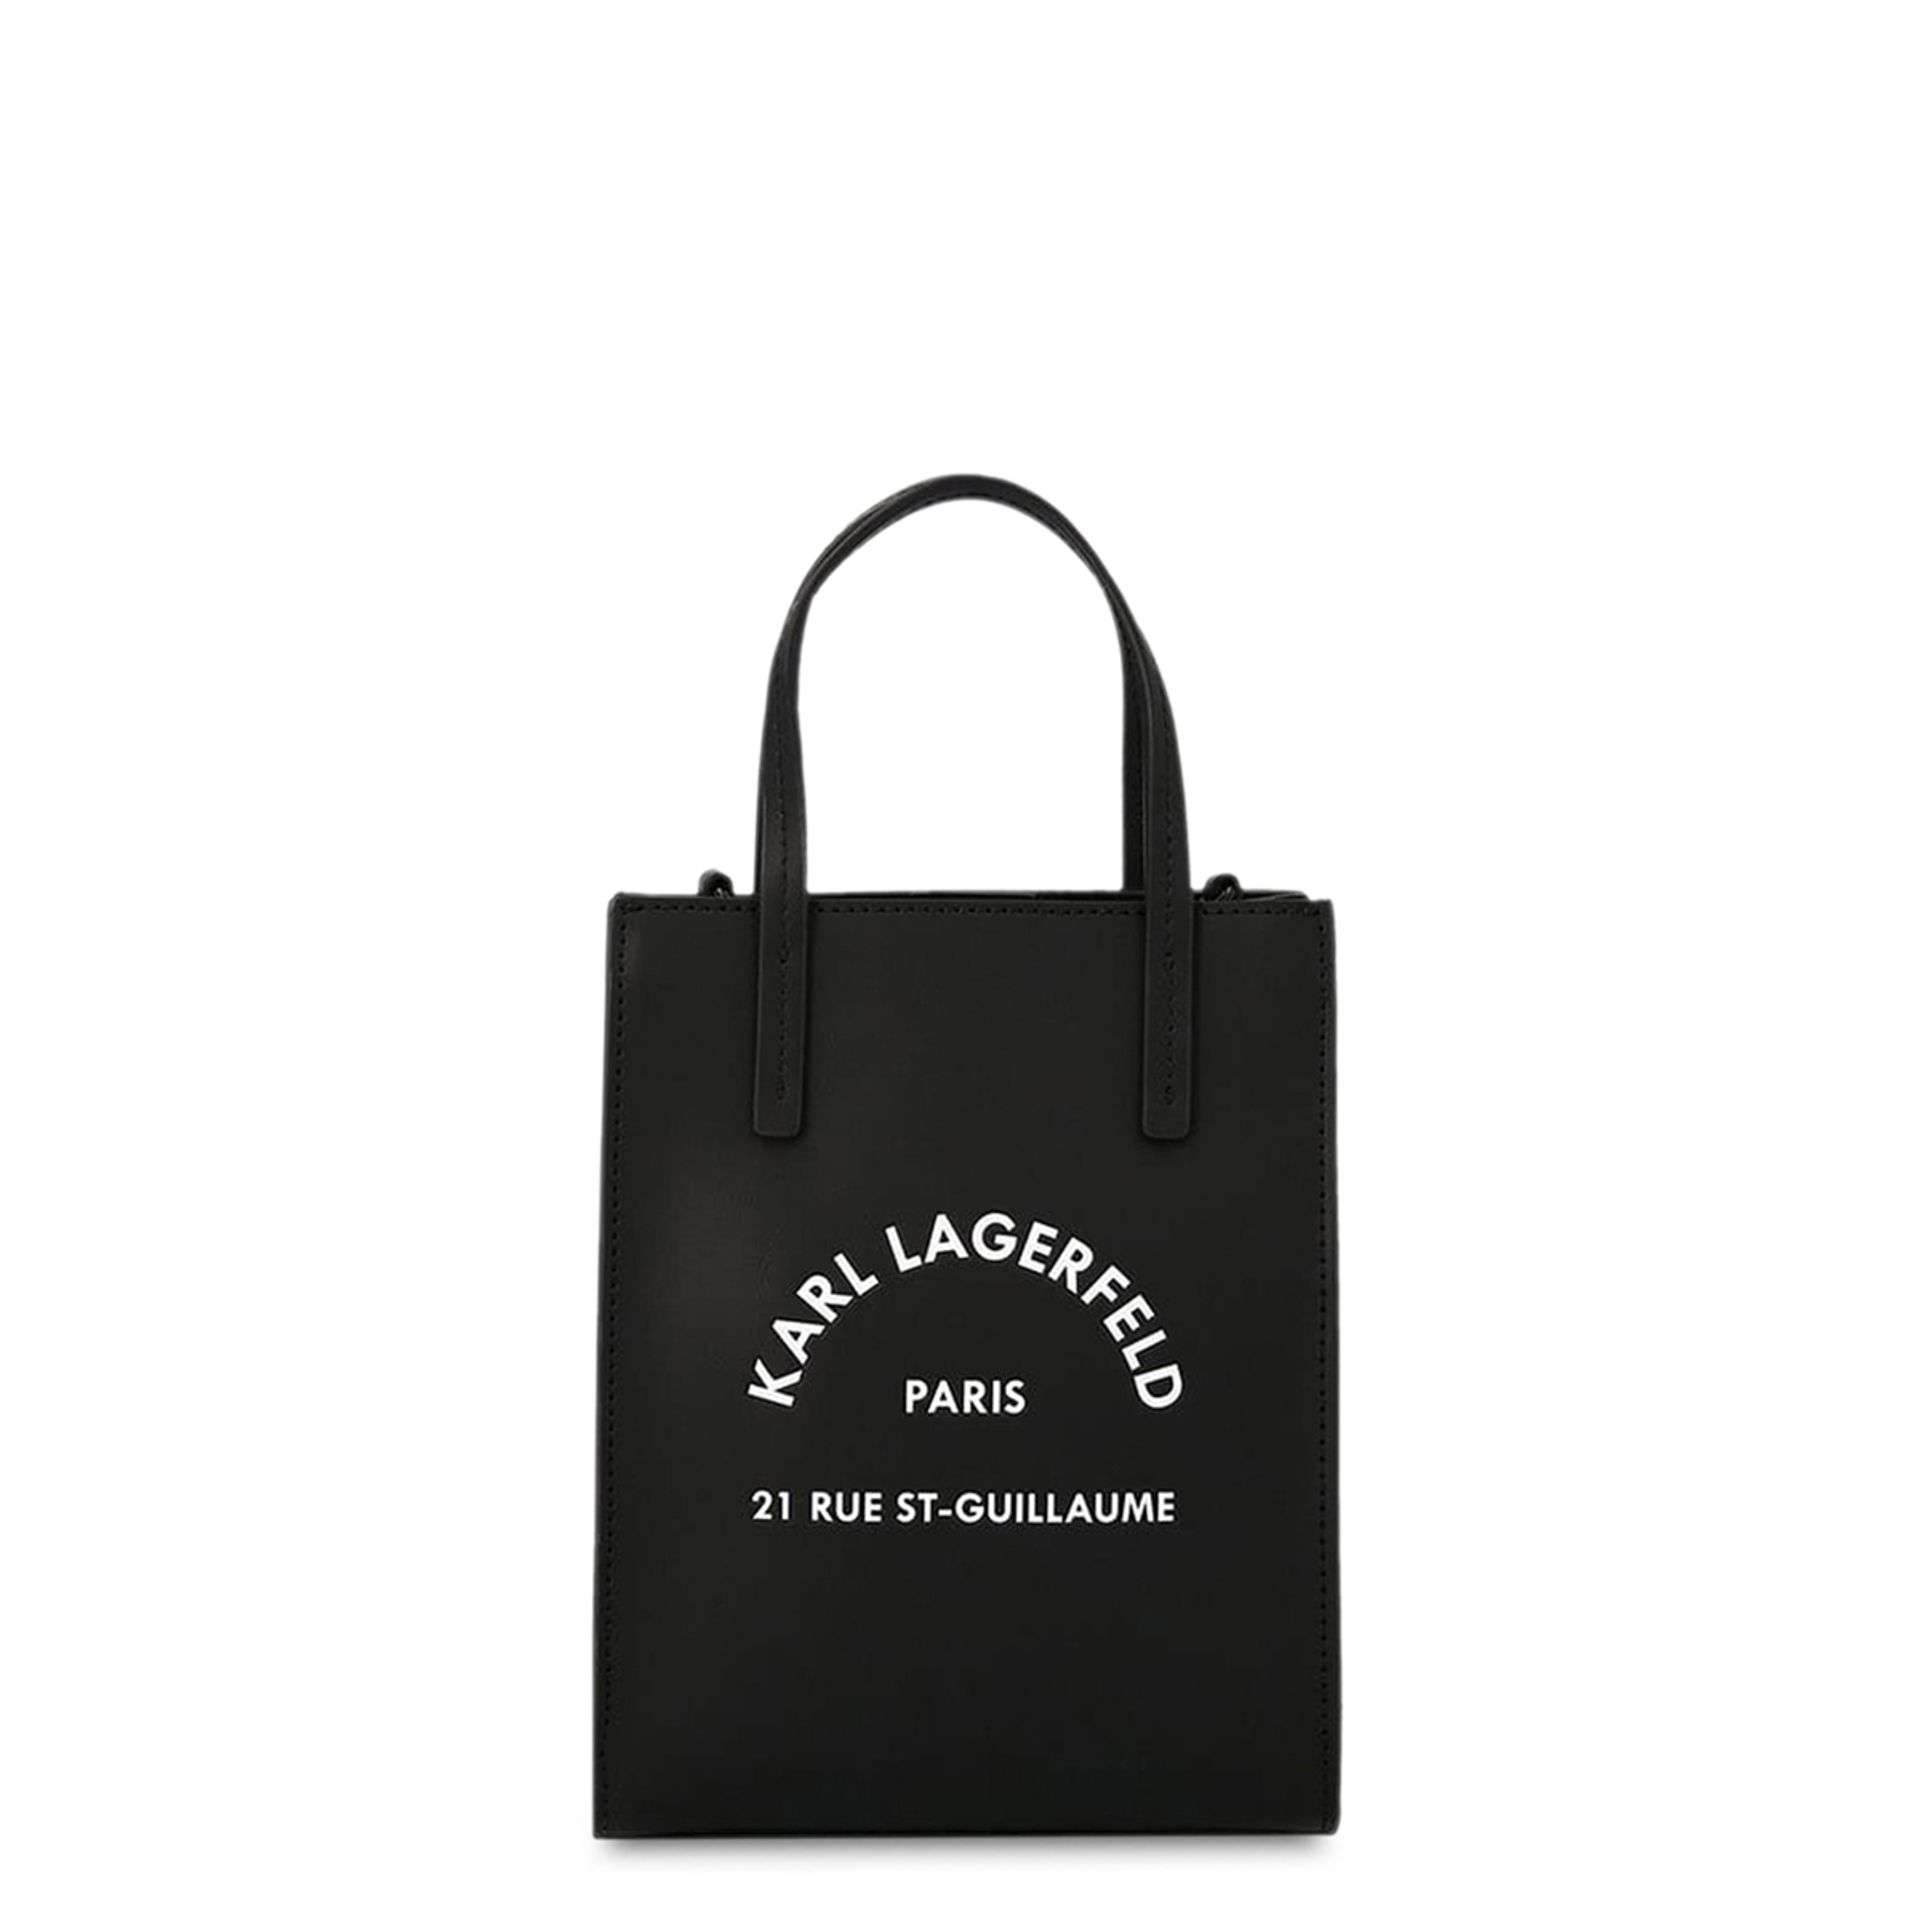 Karl Lagerfeld Handtasche schwarz